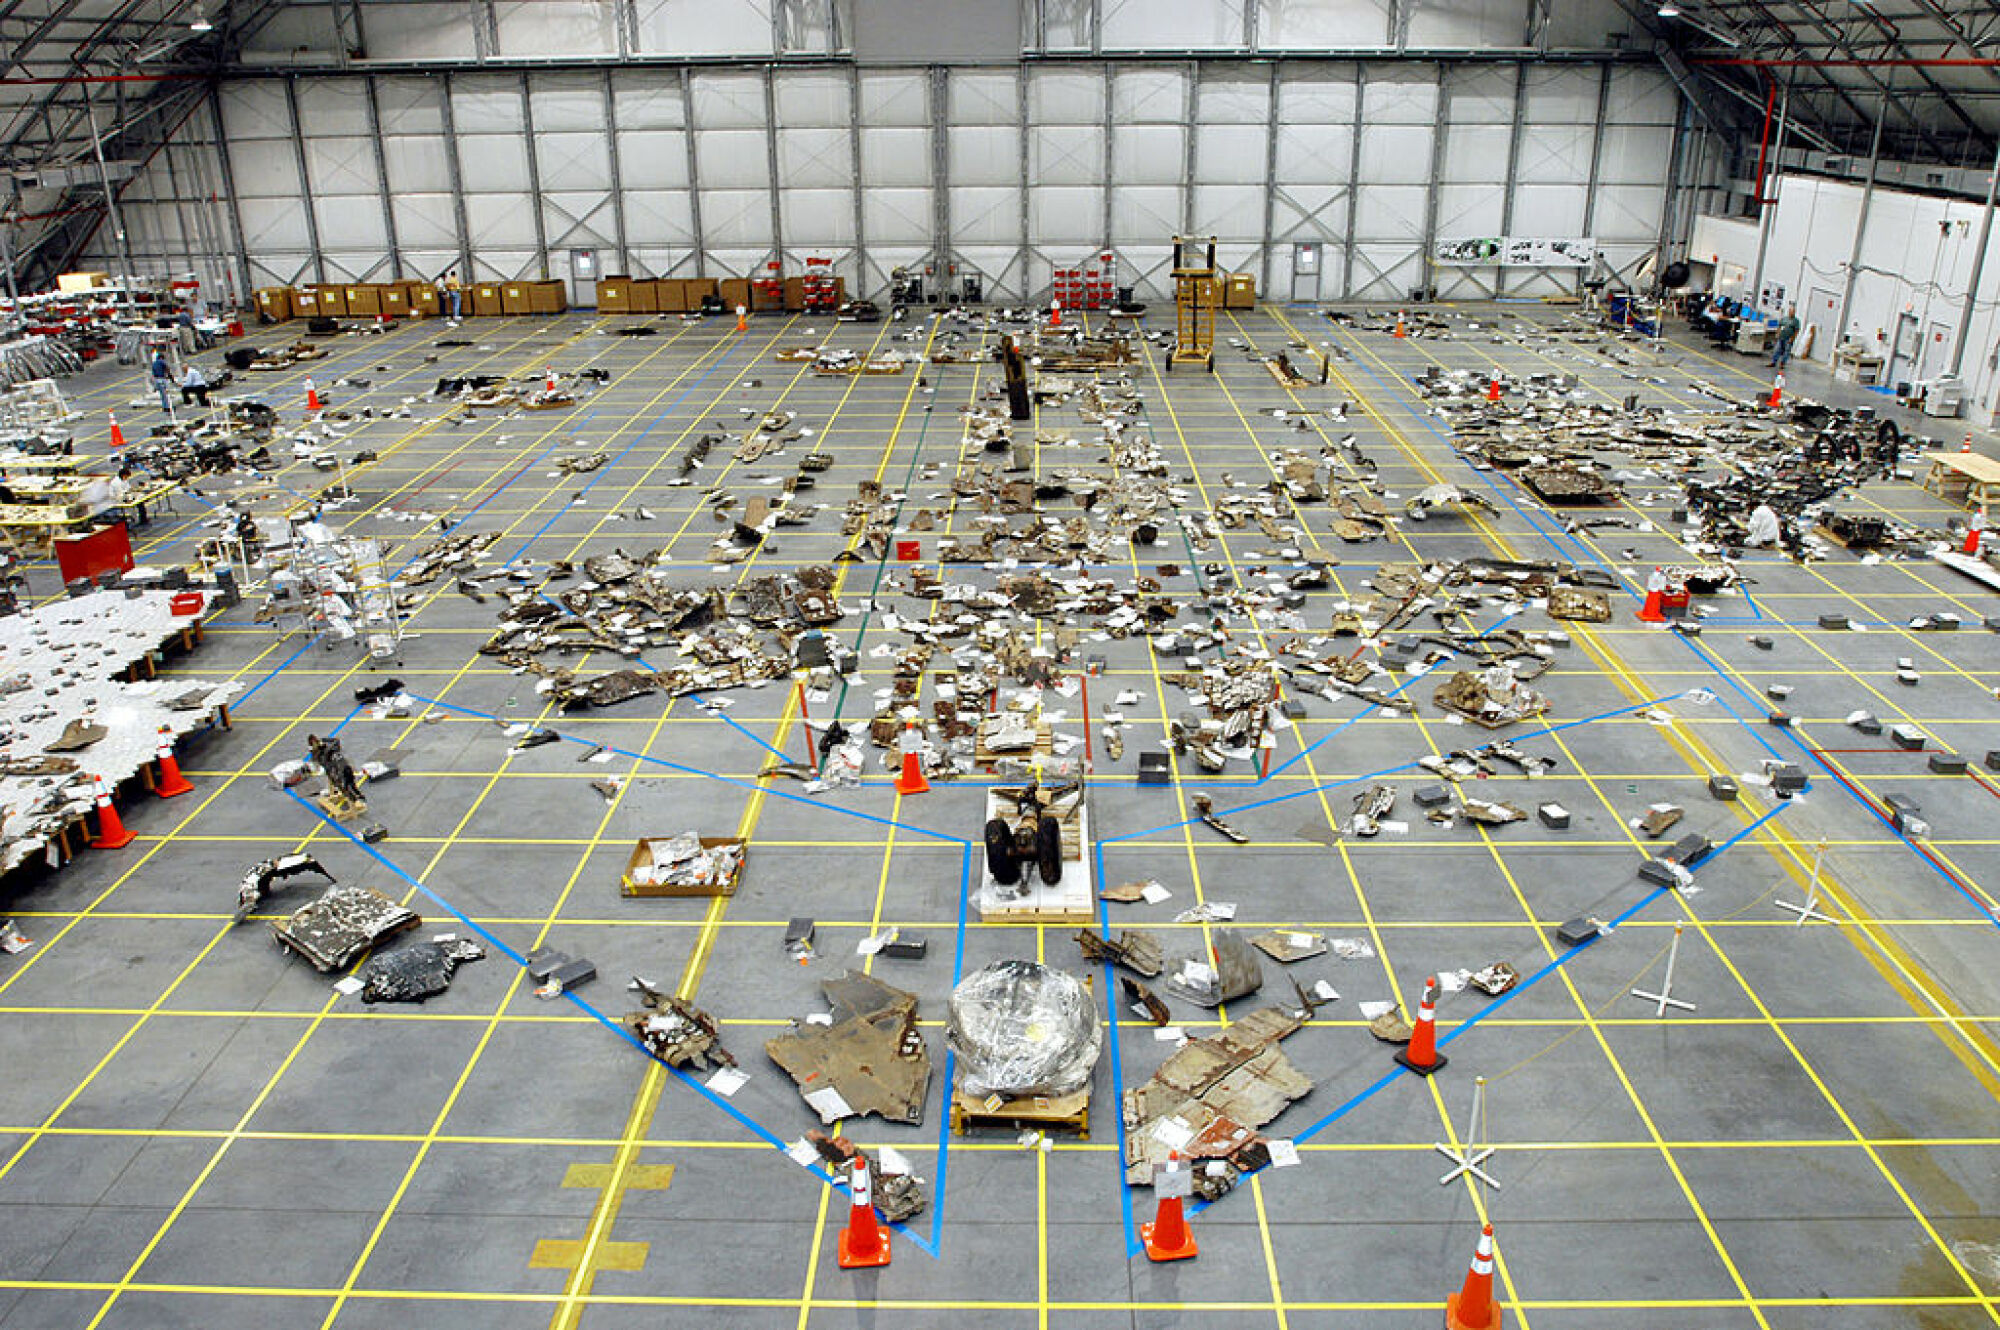 Débris de la navette spatiale Columbia éparpillés sur le sol d'un hangar